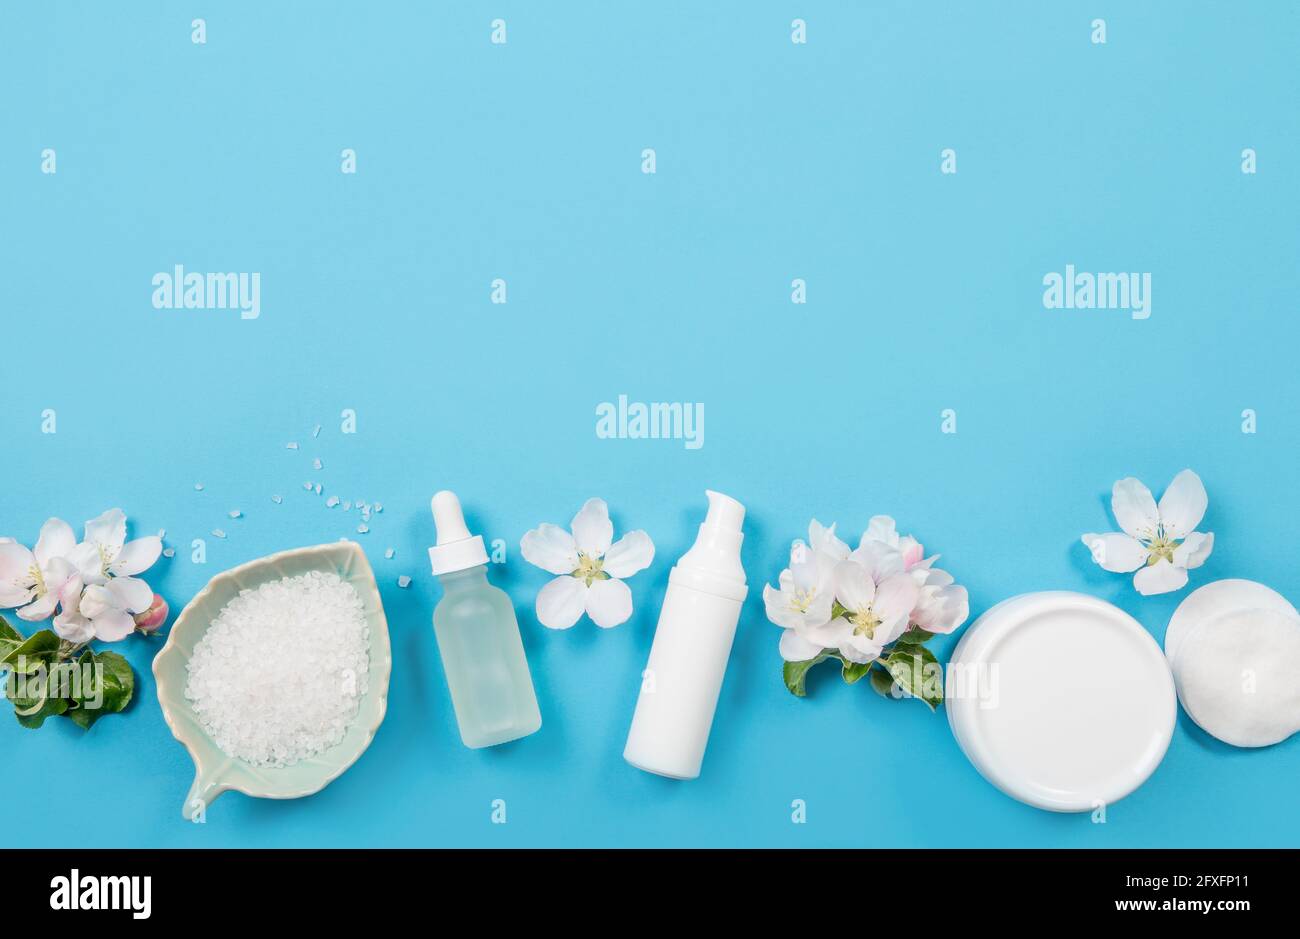 Sauber reinen Frühling Beauty-Produkte Hintergrund. Weiße Objekte feuchtigkeitsspendende Cremes, Pipettenölflasche, Badesalz in der Schüssel. Flacher blauer Hintergrund, whi Stockfoto